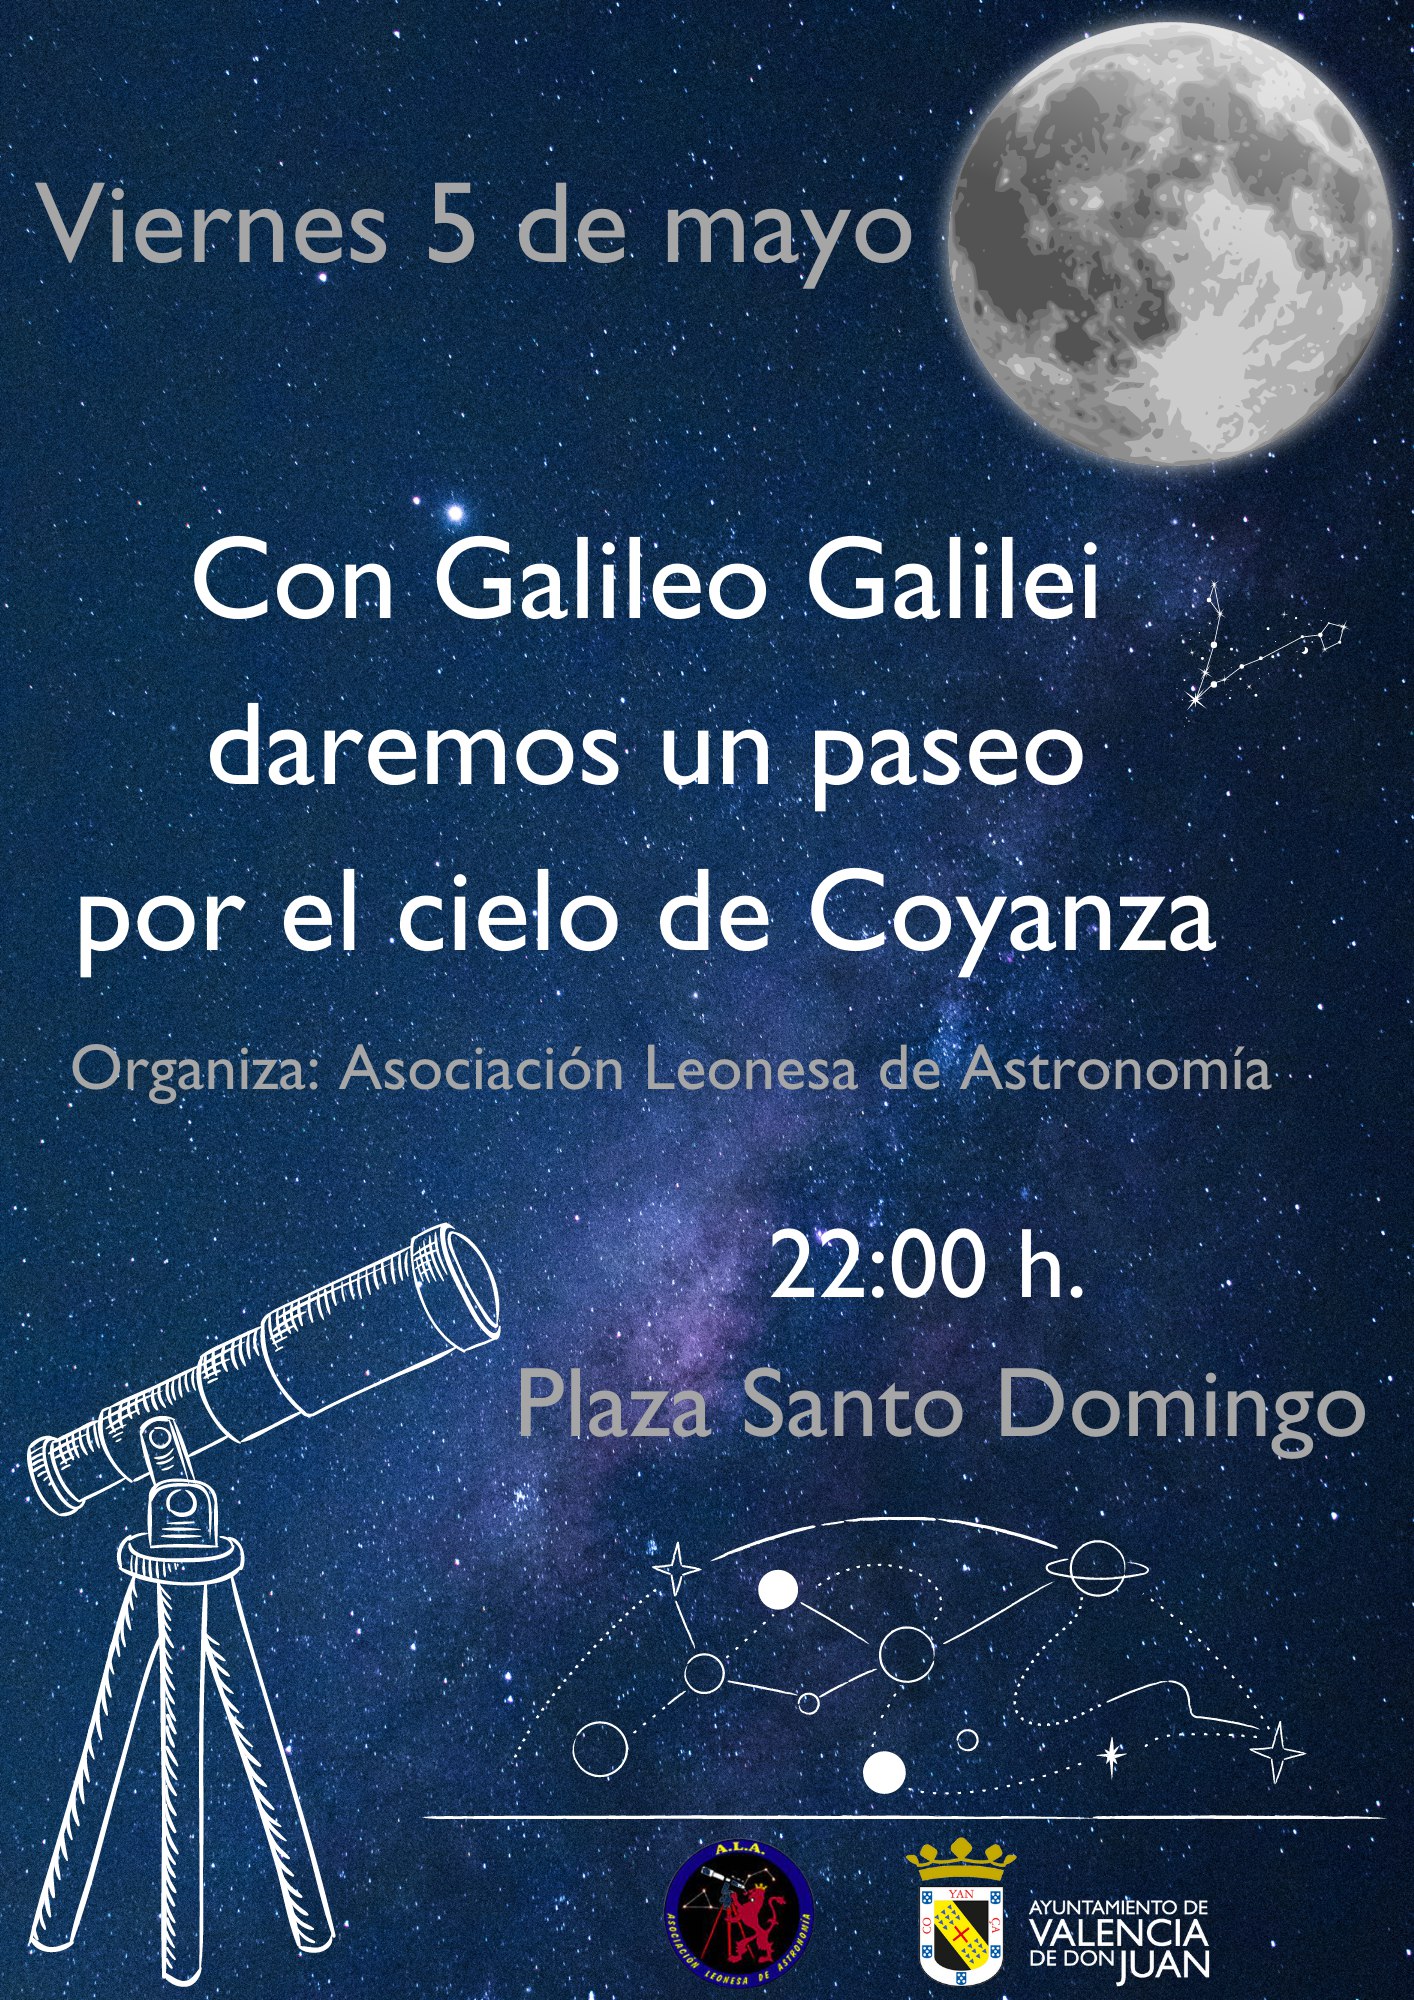 Con Galileo Galilei daremos un paseo por el cielo de Coyanza.